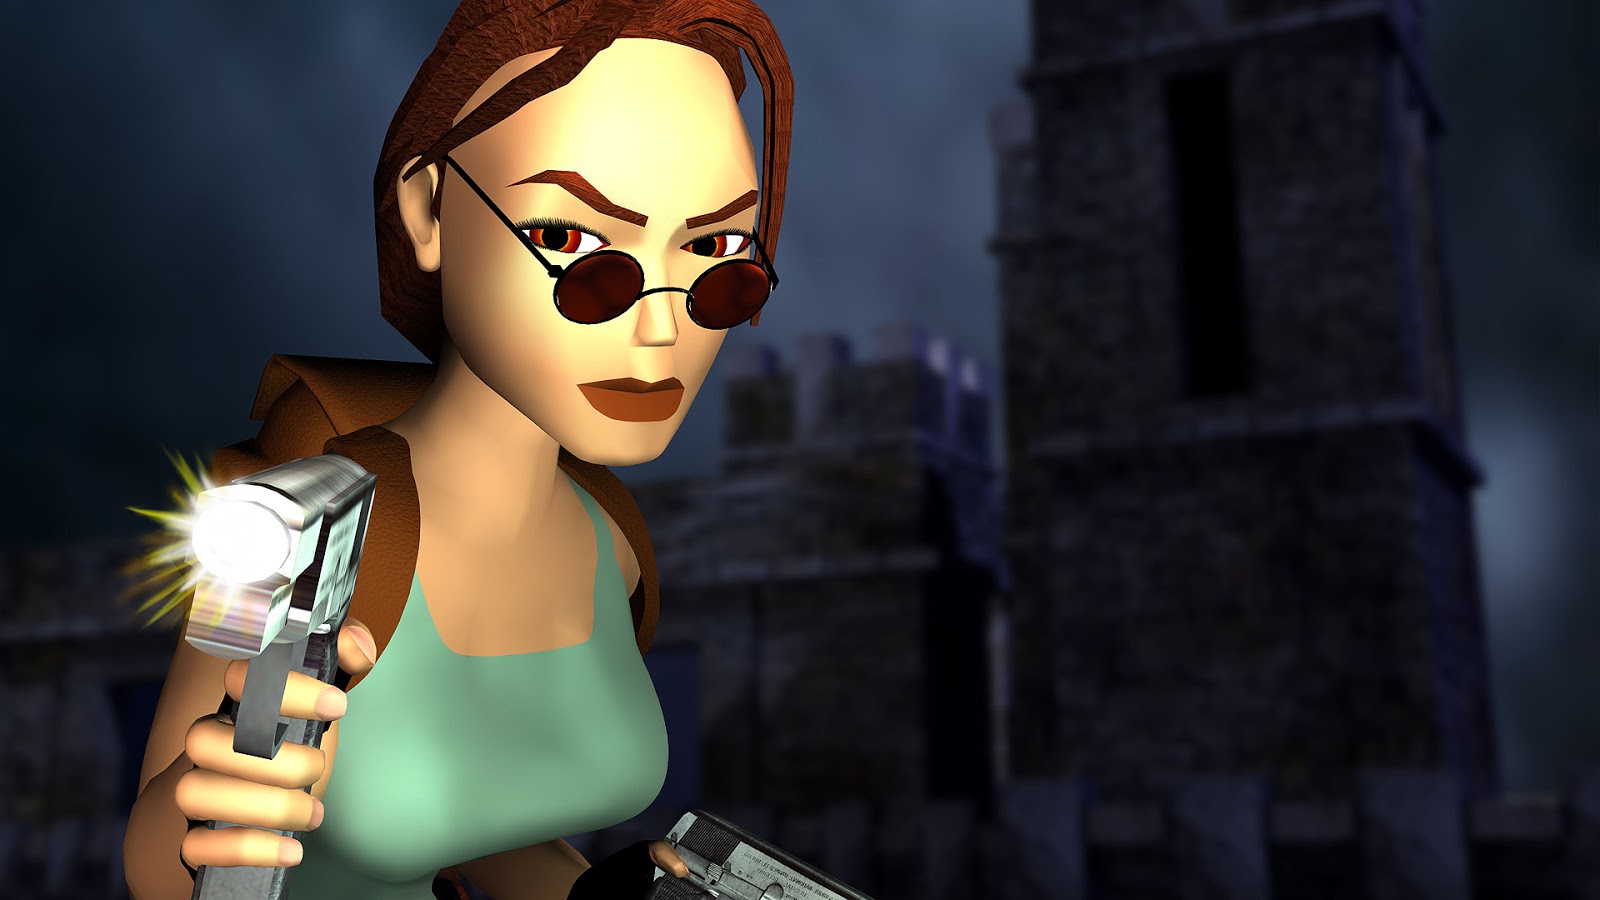 Qual é a ordem dos filmes de Lara Croft em Tomb Raider